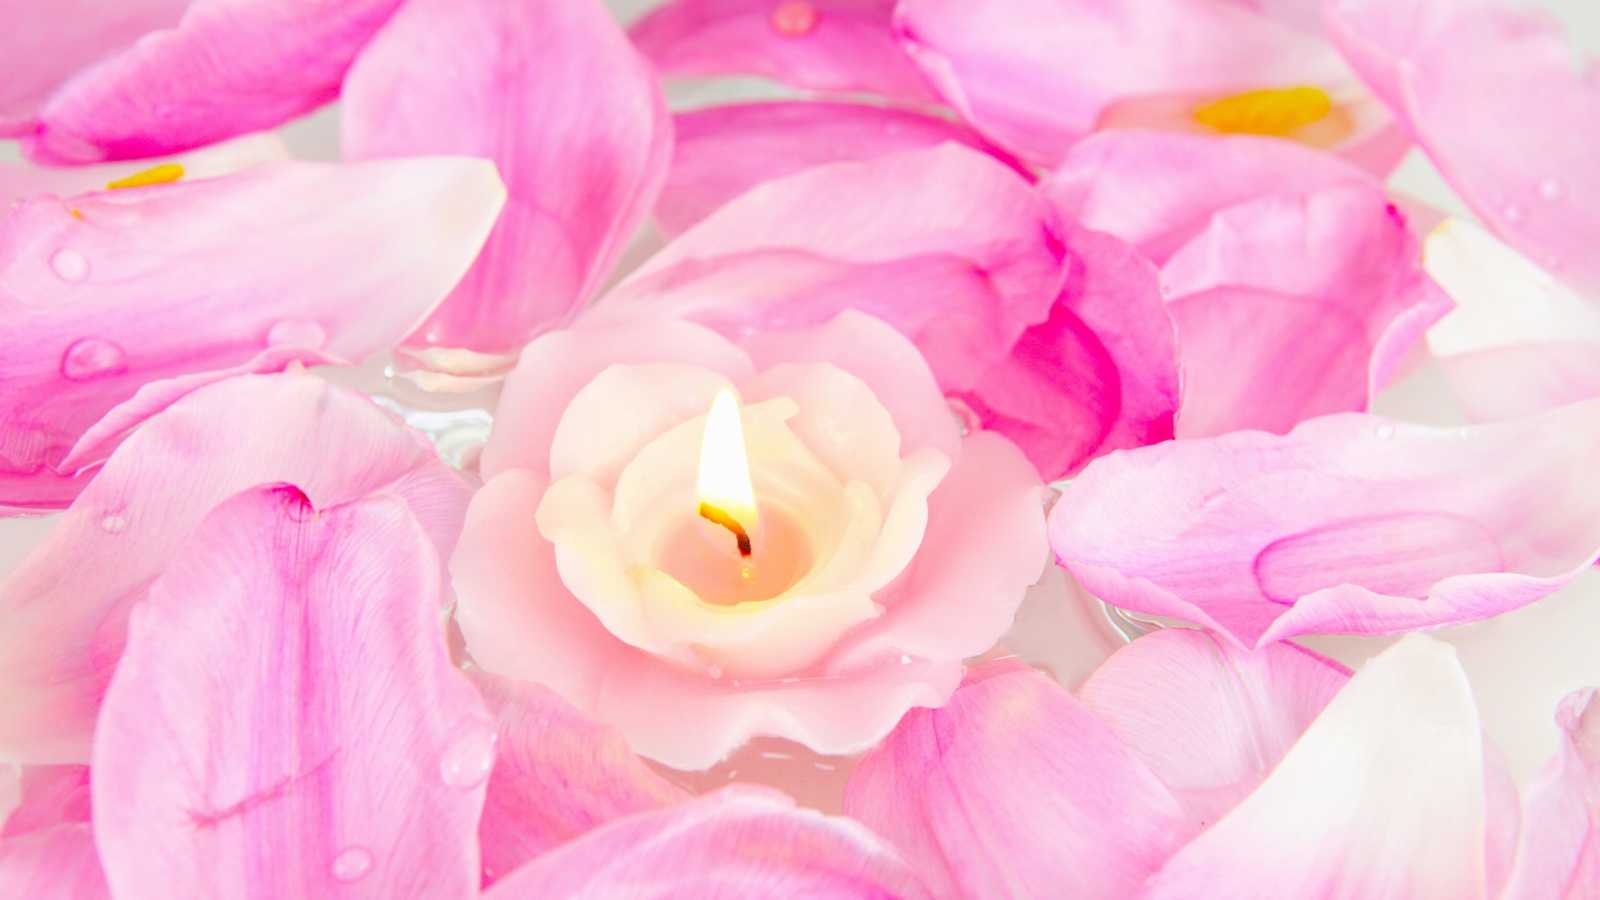 Candle on lotus petals screenshot #1 1600x900